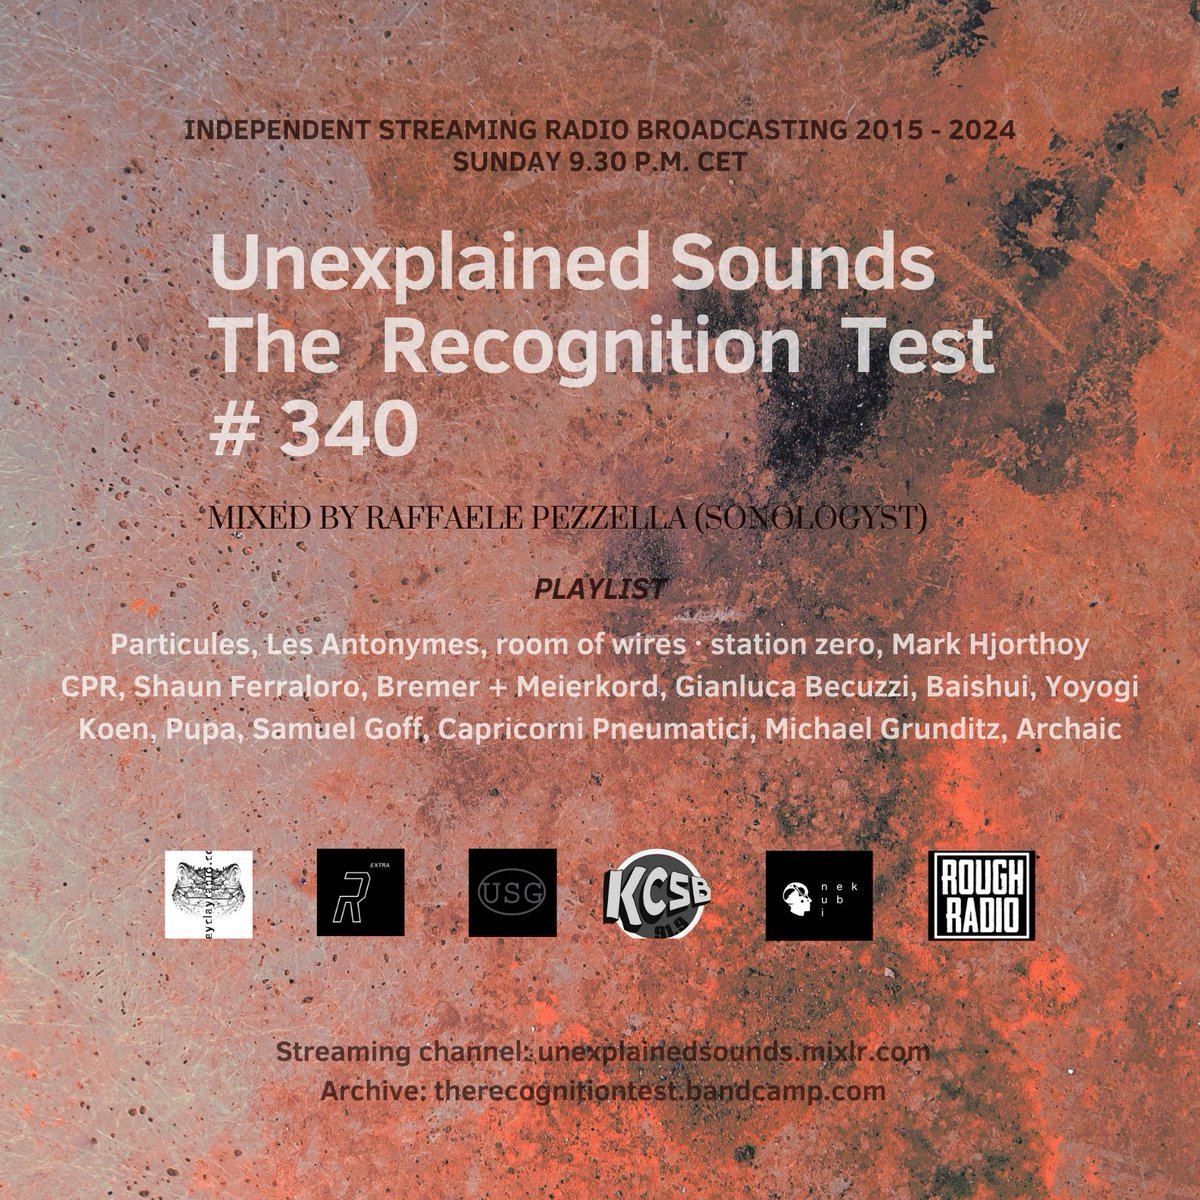 Sunday, April 21st 2024. H 9.30 P.M. CET Unexplained Sounds radio transmission, The Recognition Test # 340. Mixed by Raffaele Pezzella (a.k.a. Sonologyst). reaming: unexplainedsounds.mixlr.com